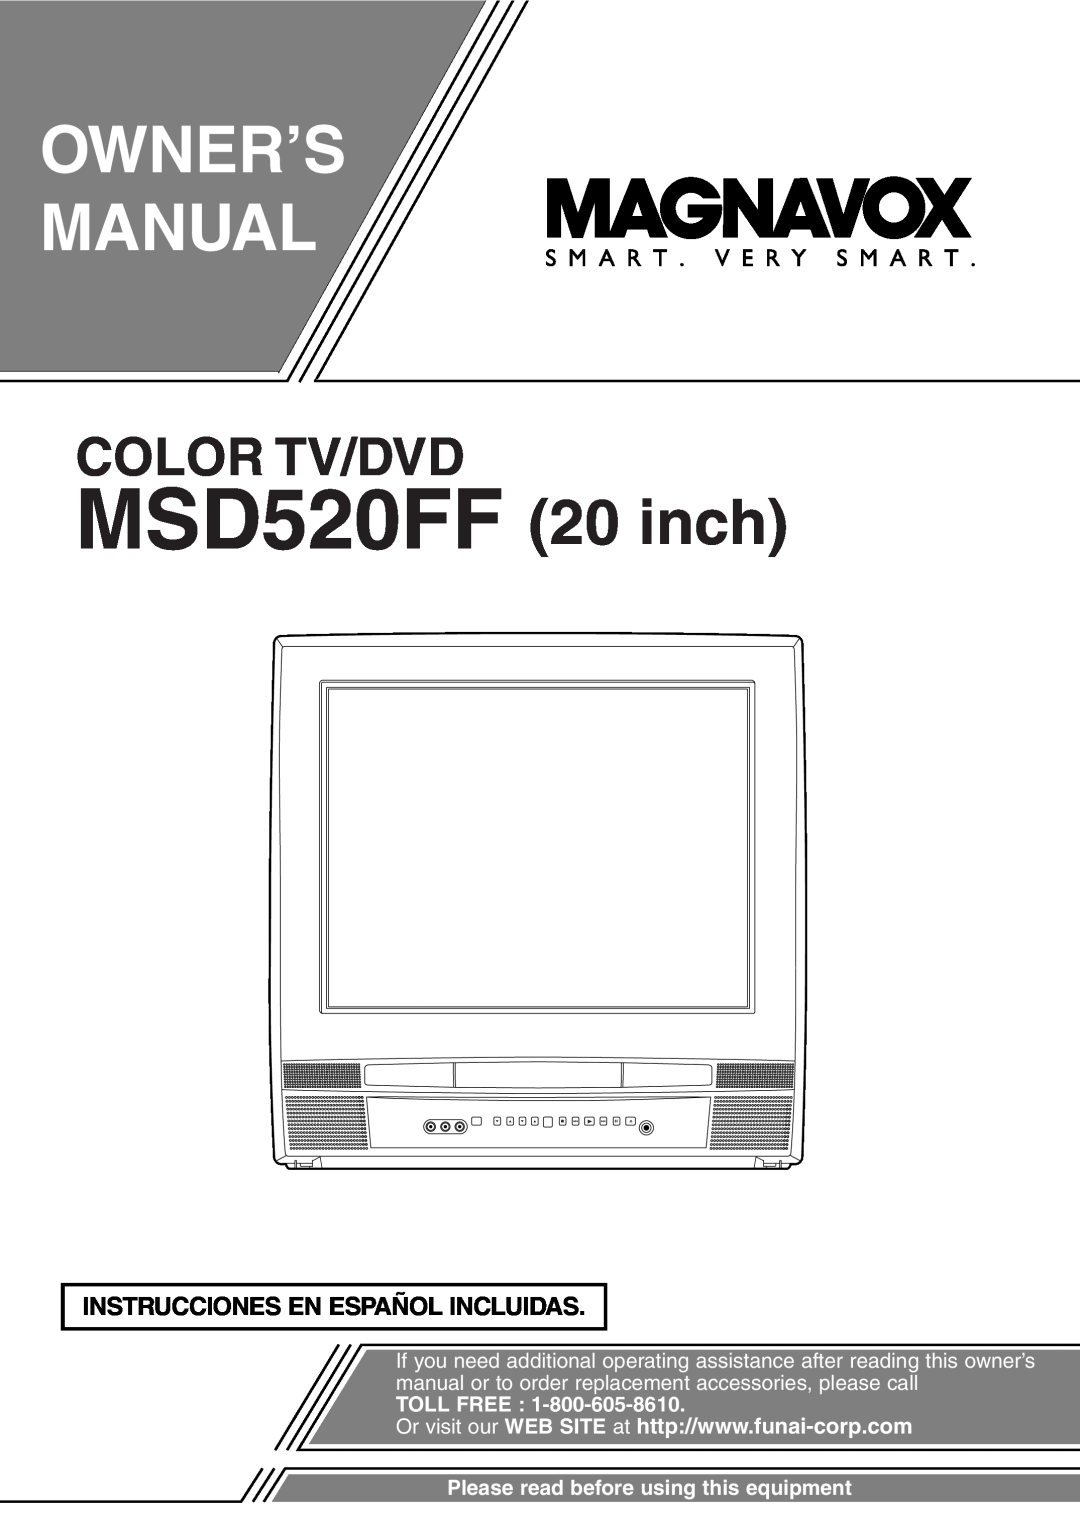 FUNAI owner manual Instrucciones En Español Incluidas, MSD520FF 20 inch, Owner’S Manual, Color Tv/Dvd, Toll Free 